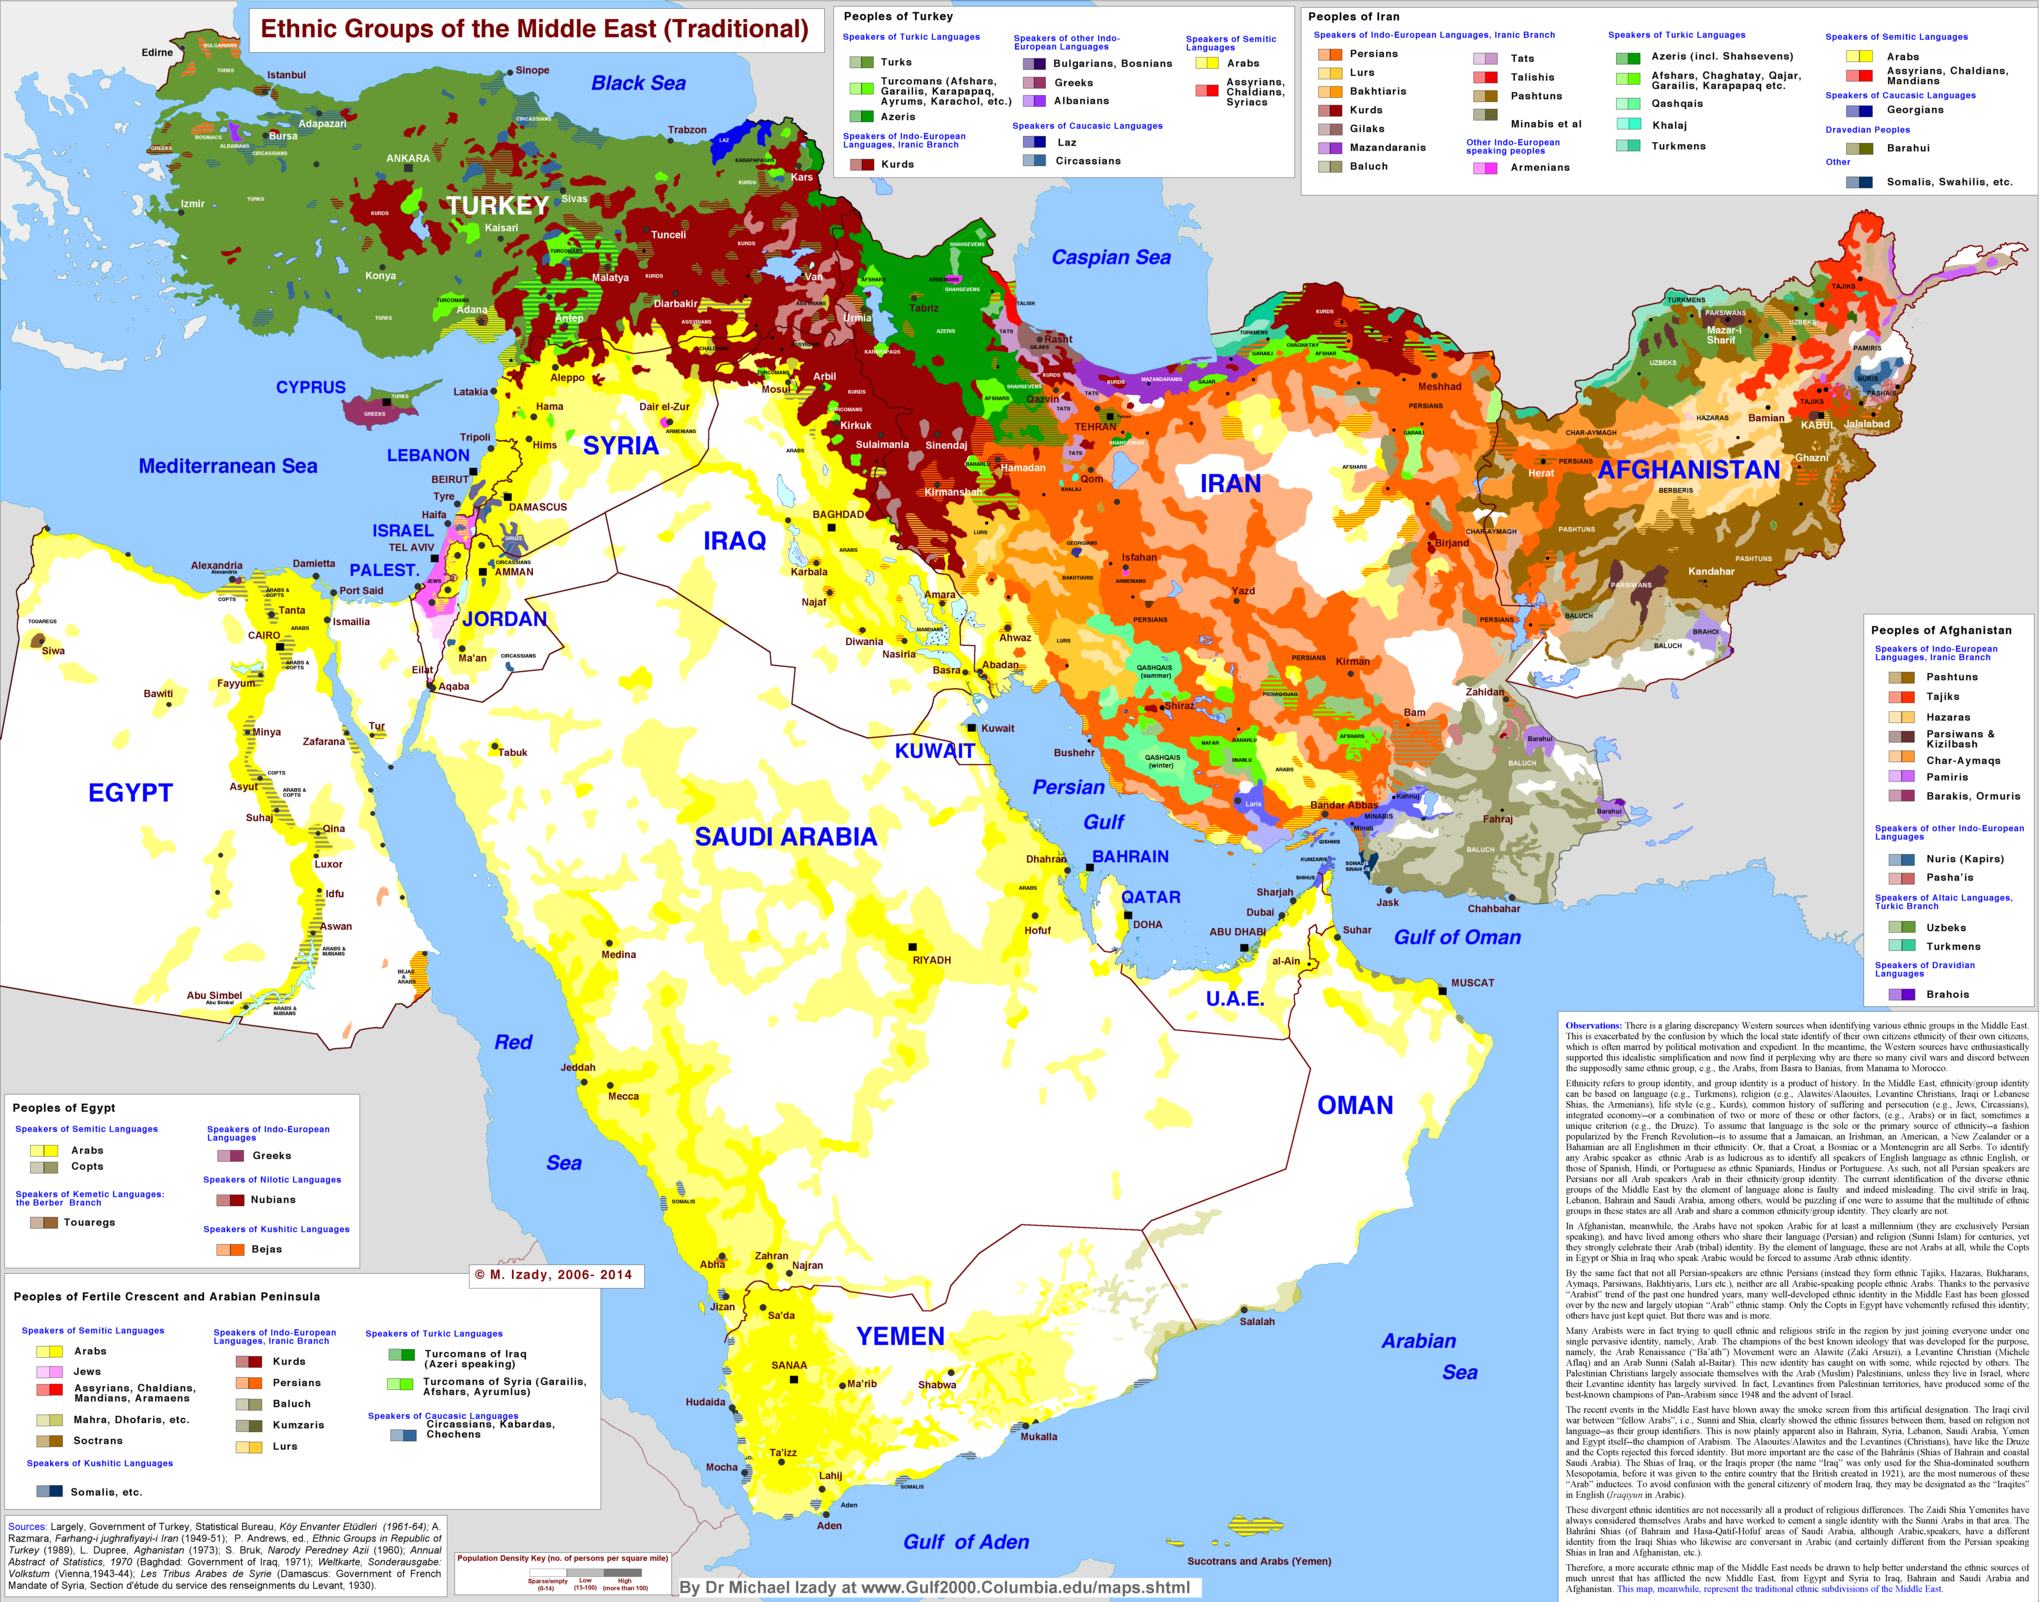 Proche-Orient et Moyen-Orient (différence)